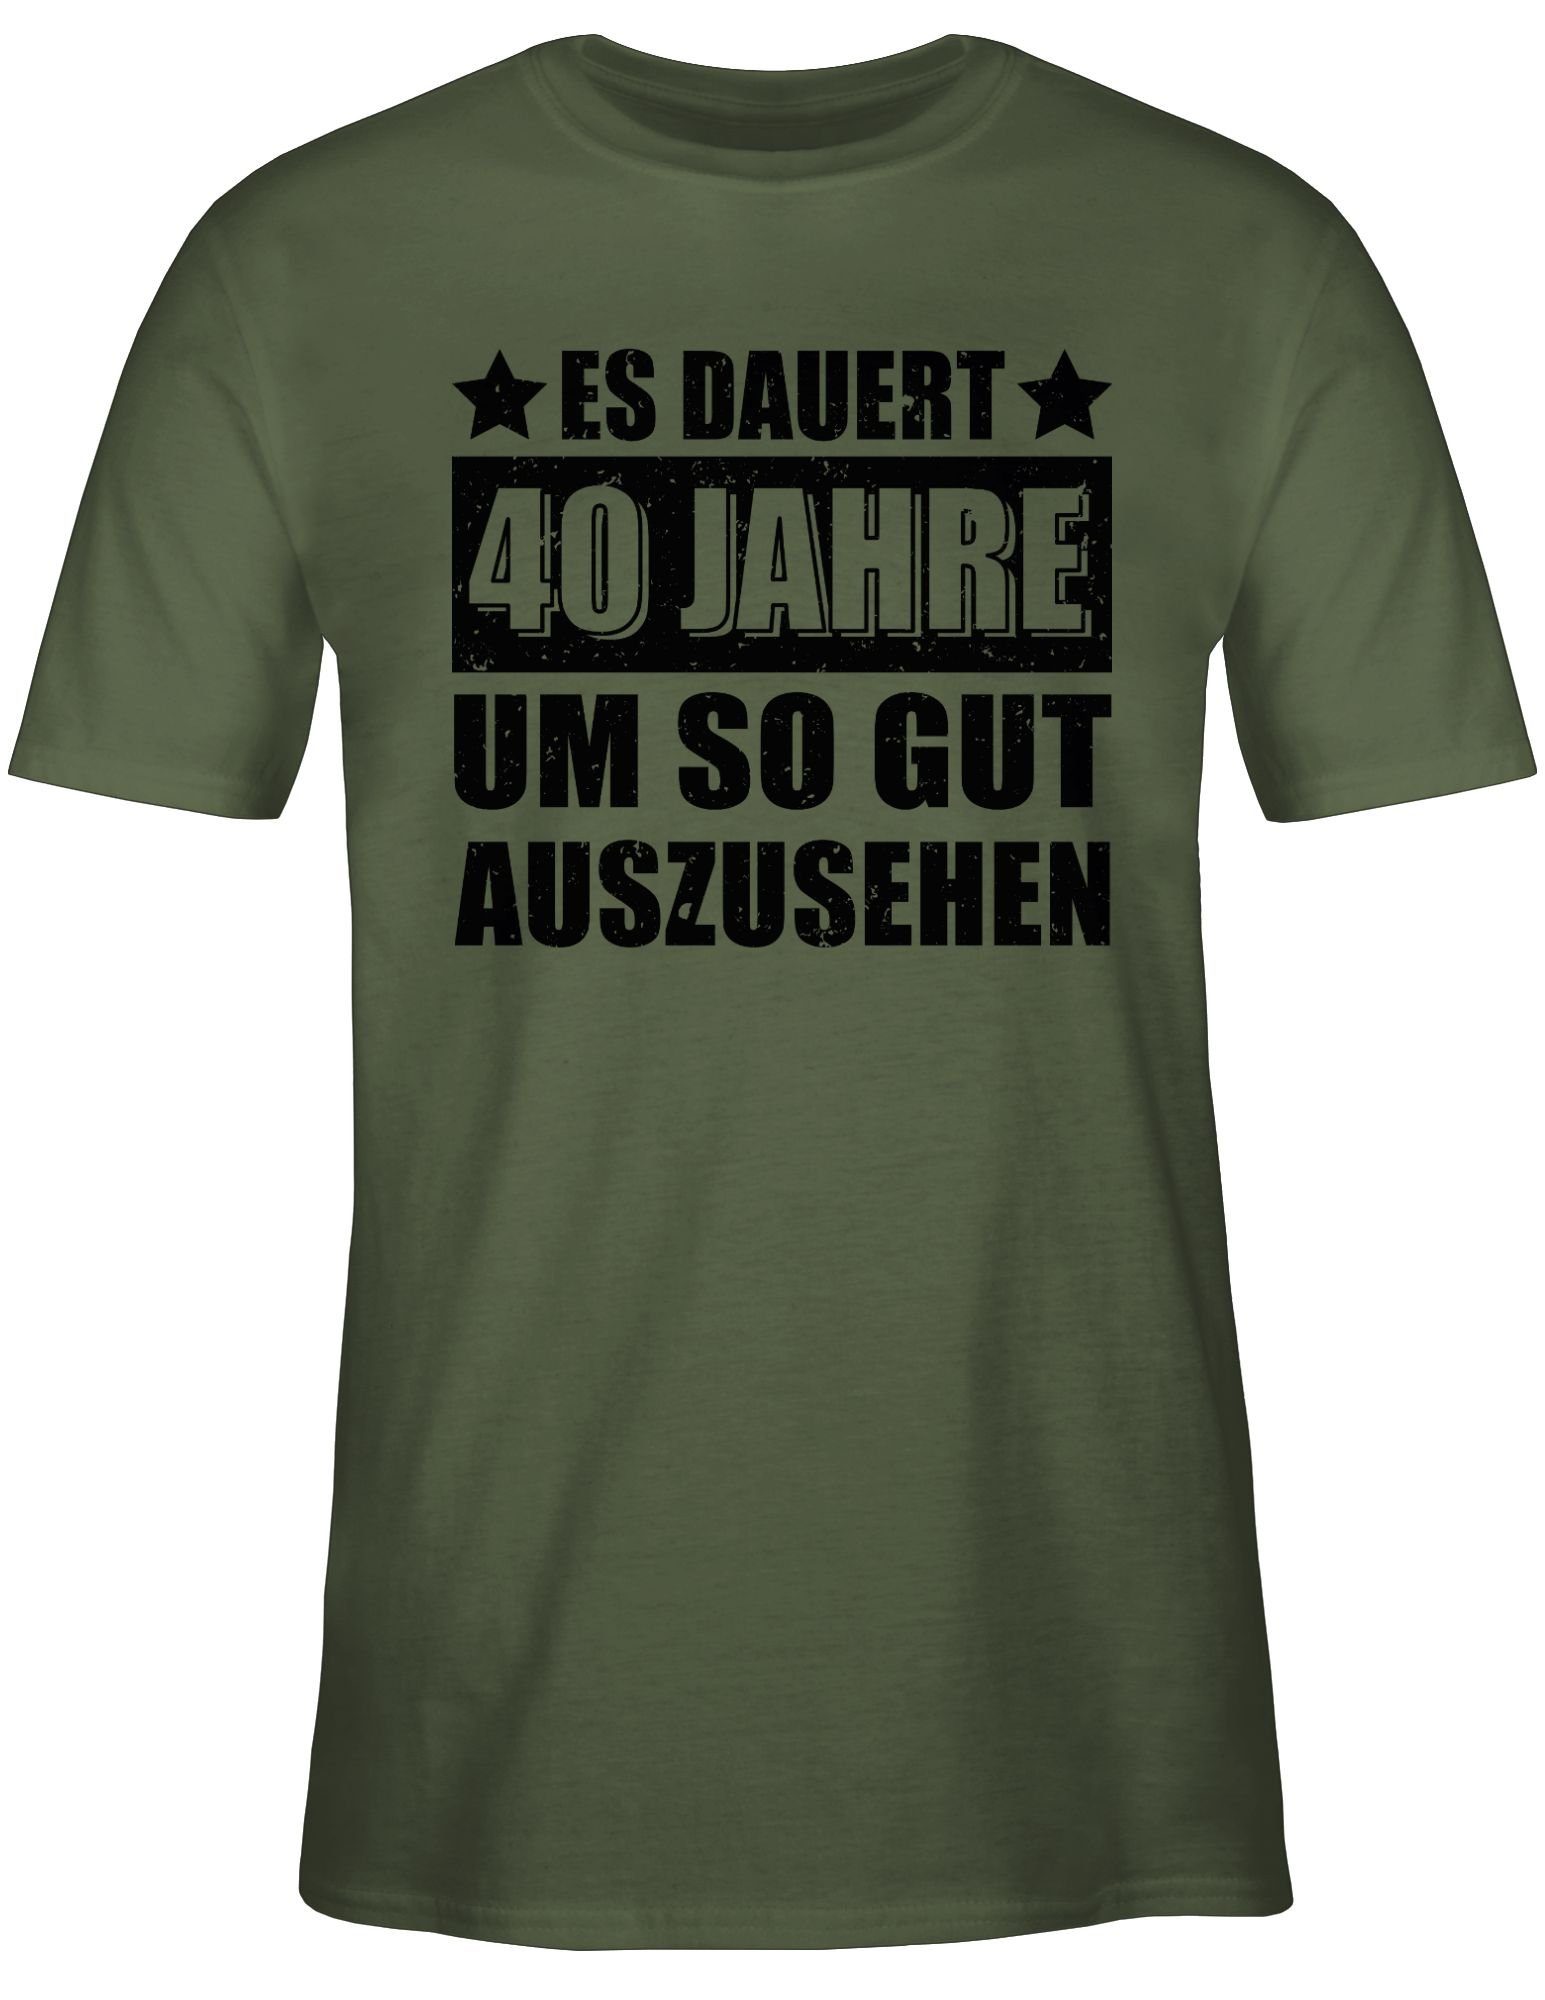 Shirtracer gut auszusehen schwarz Jahre Es dauert vierzig 40. T-Shirt so Grün um Geburtstag 2 Army